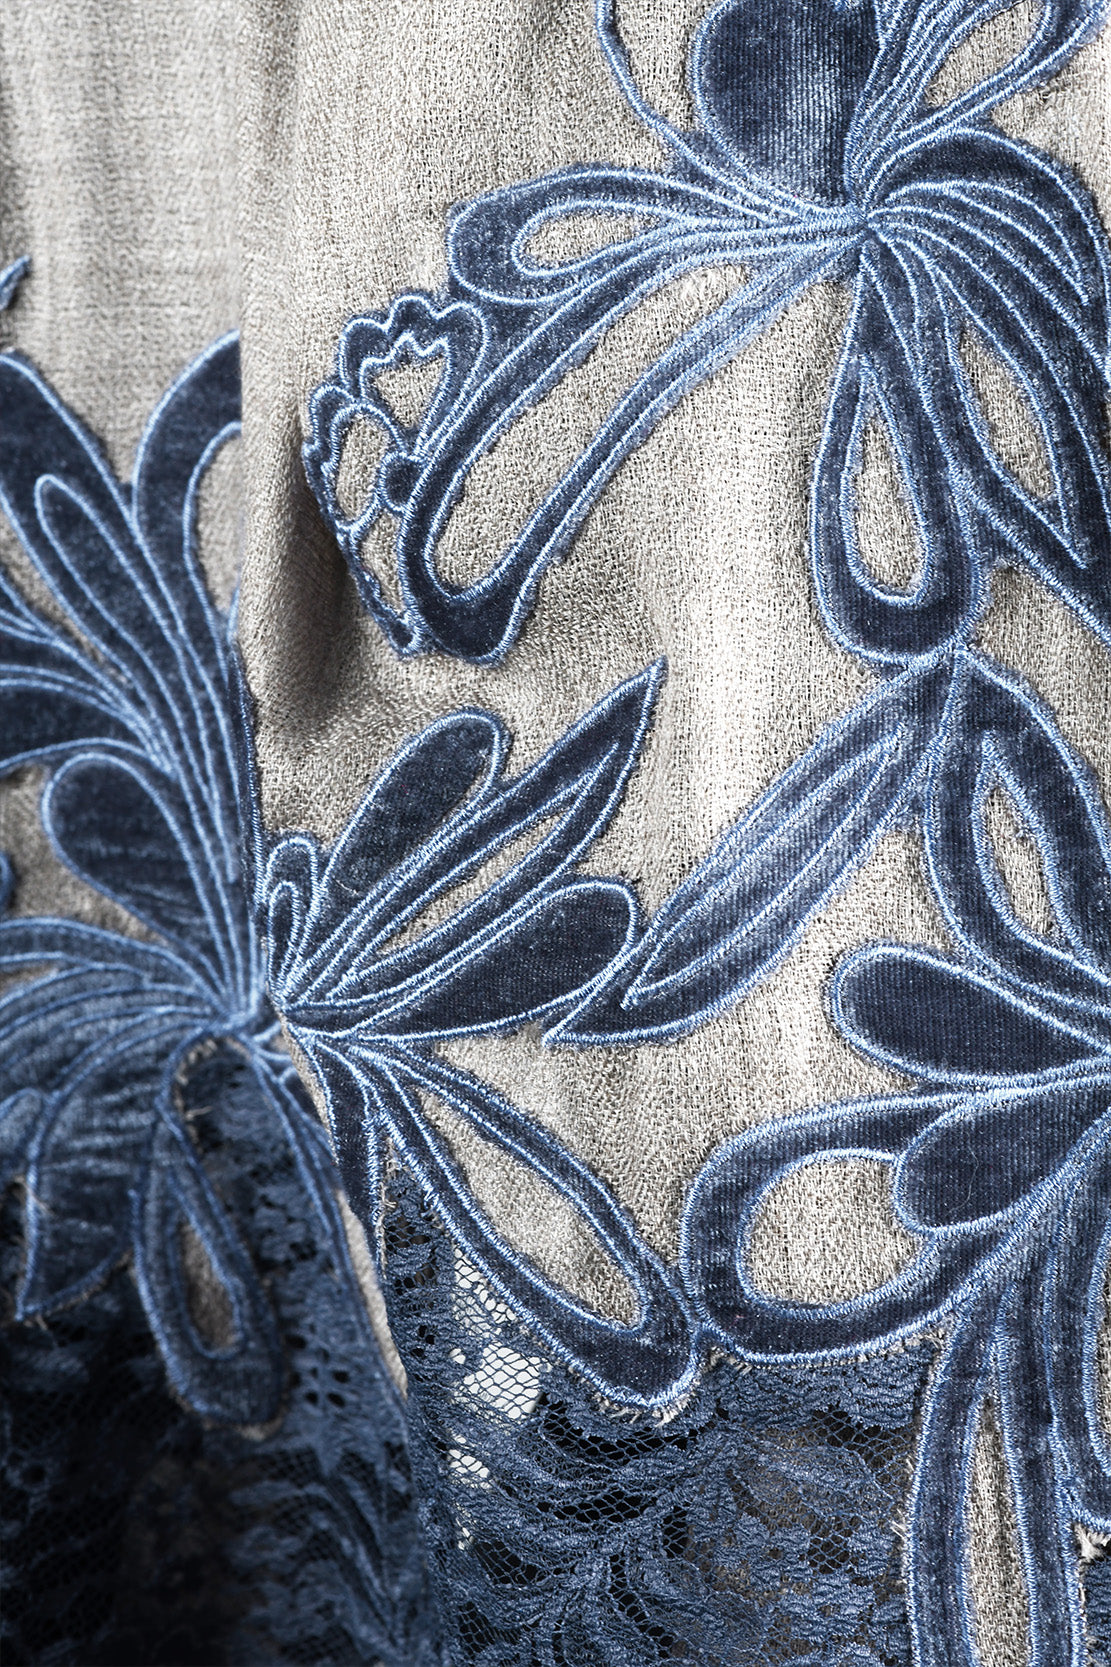 Lace Stole With Velvet Appliqué Work - Grey